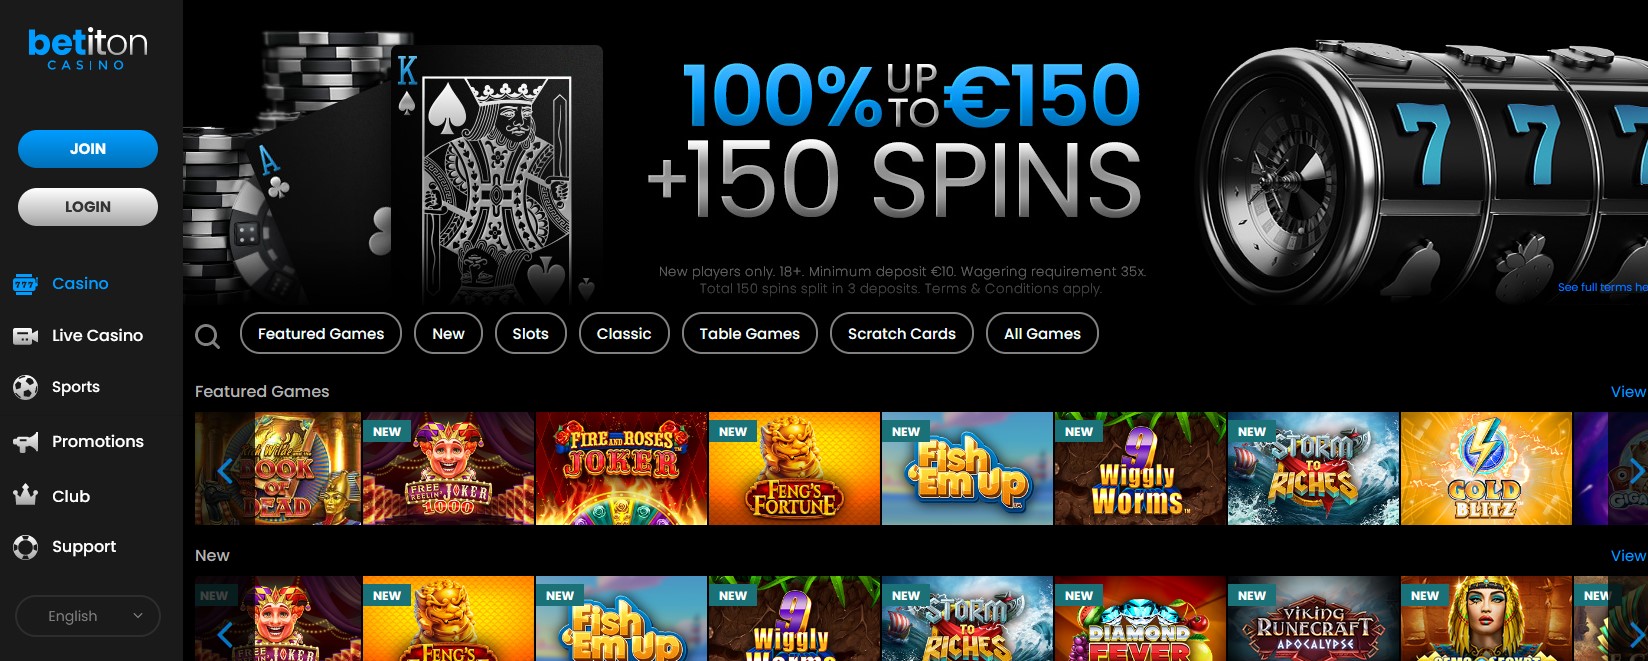 betiton casino website homepage screenshot